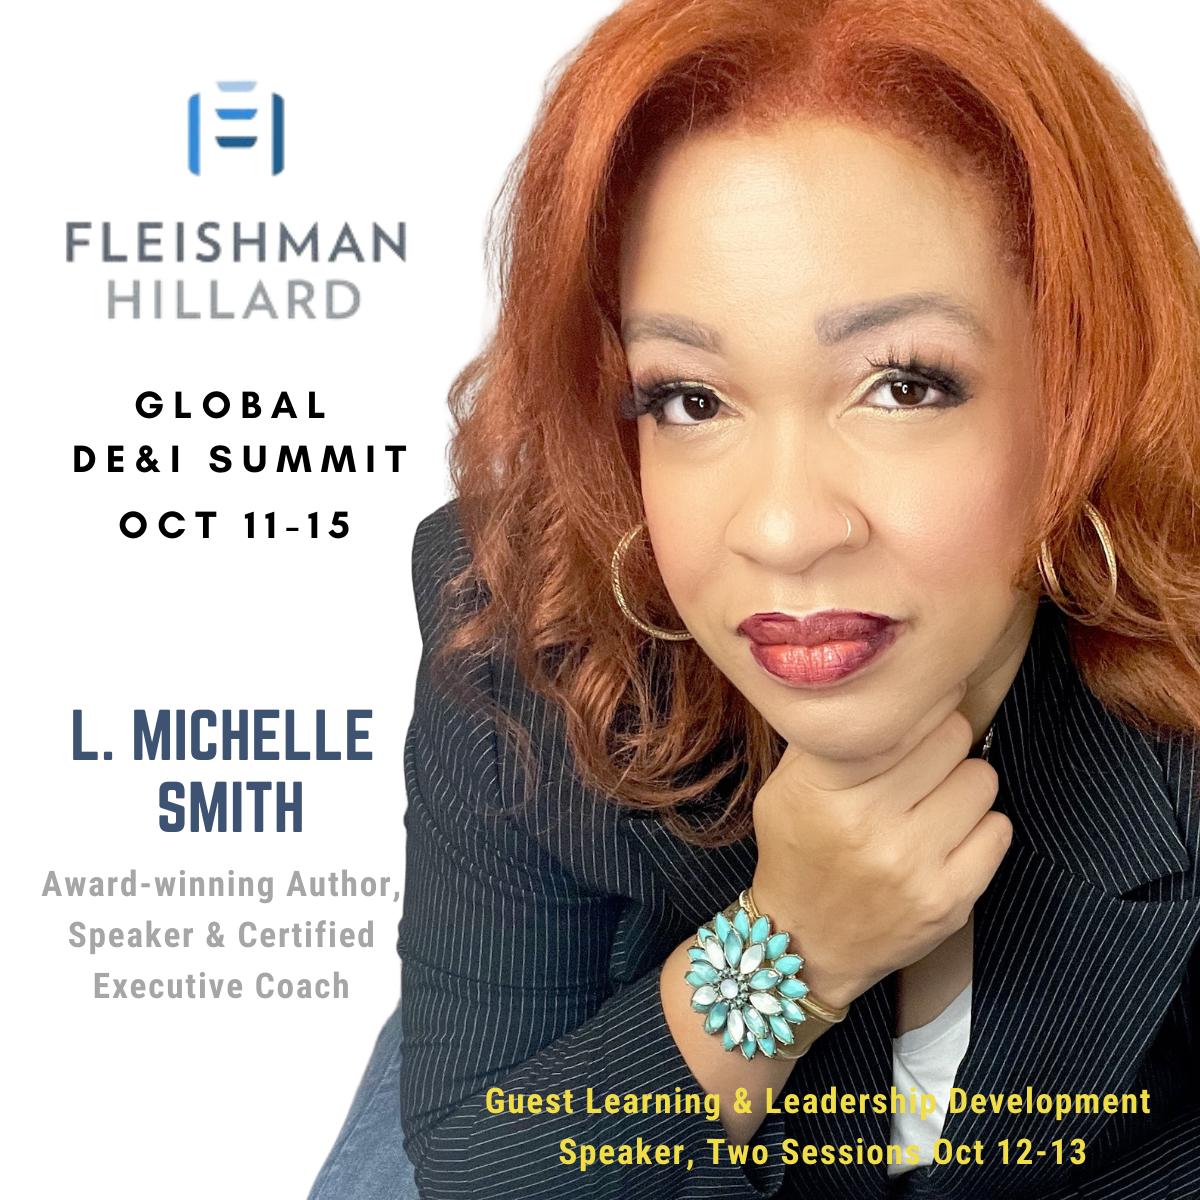 Global DE & I Summit (October 11-15)